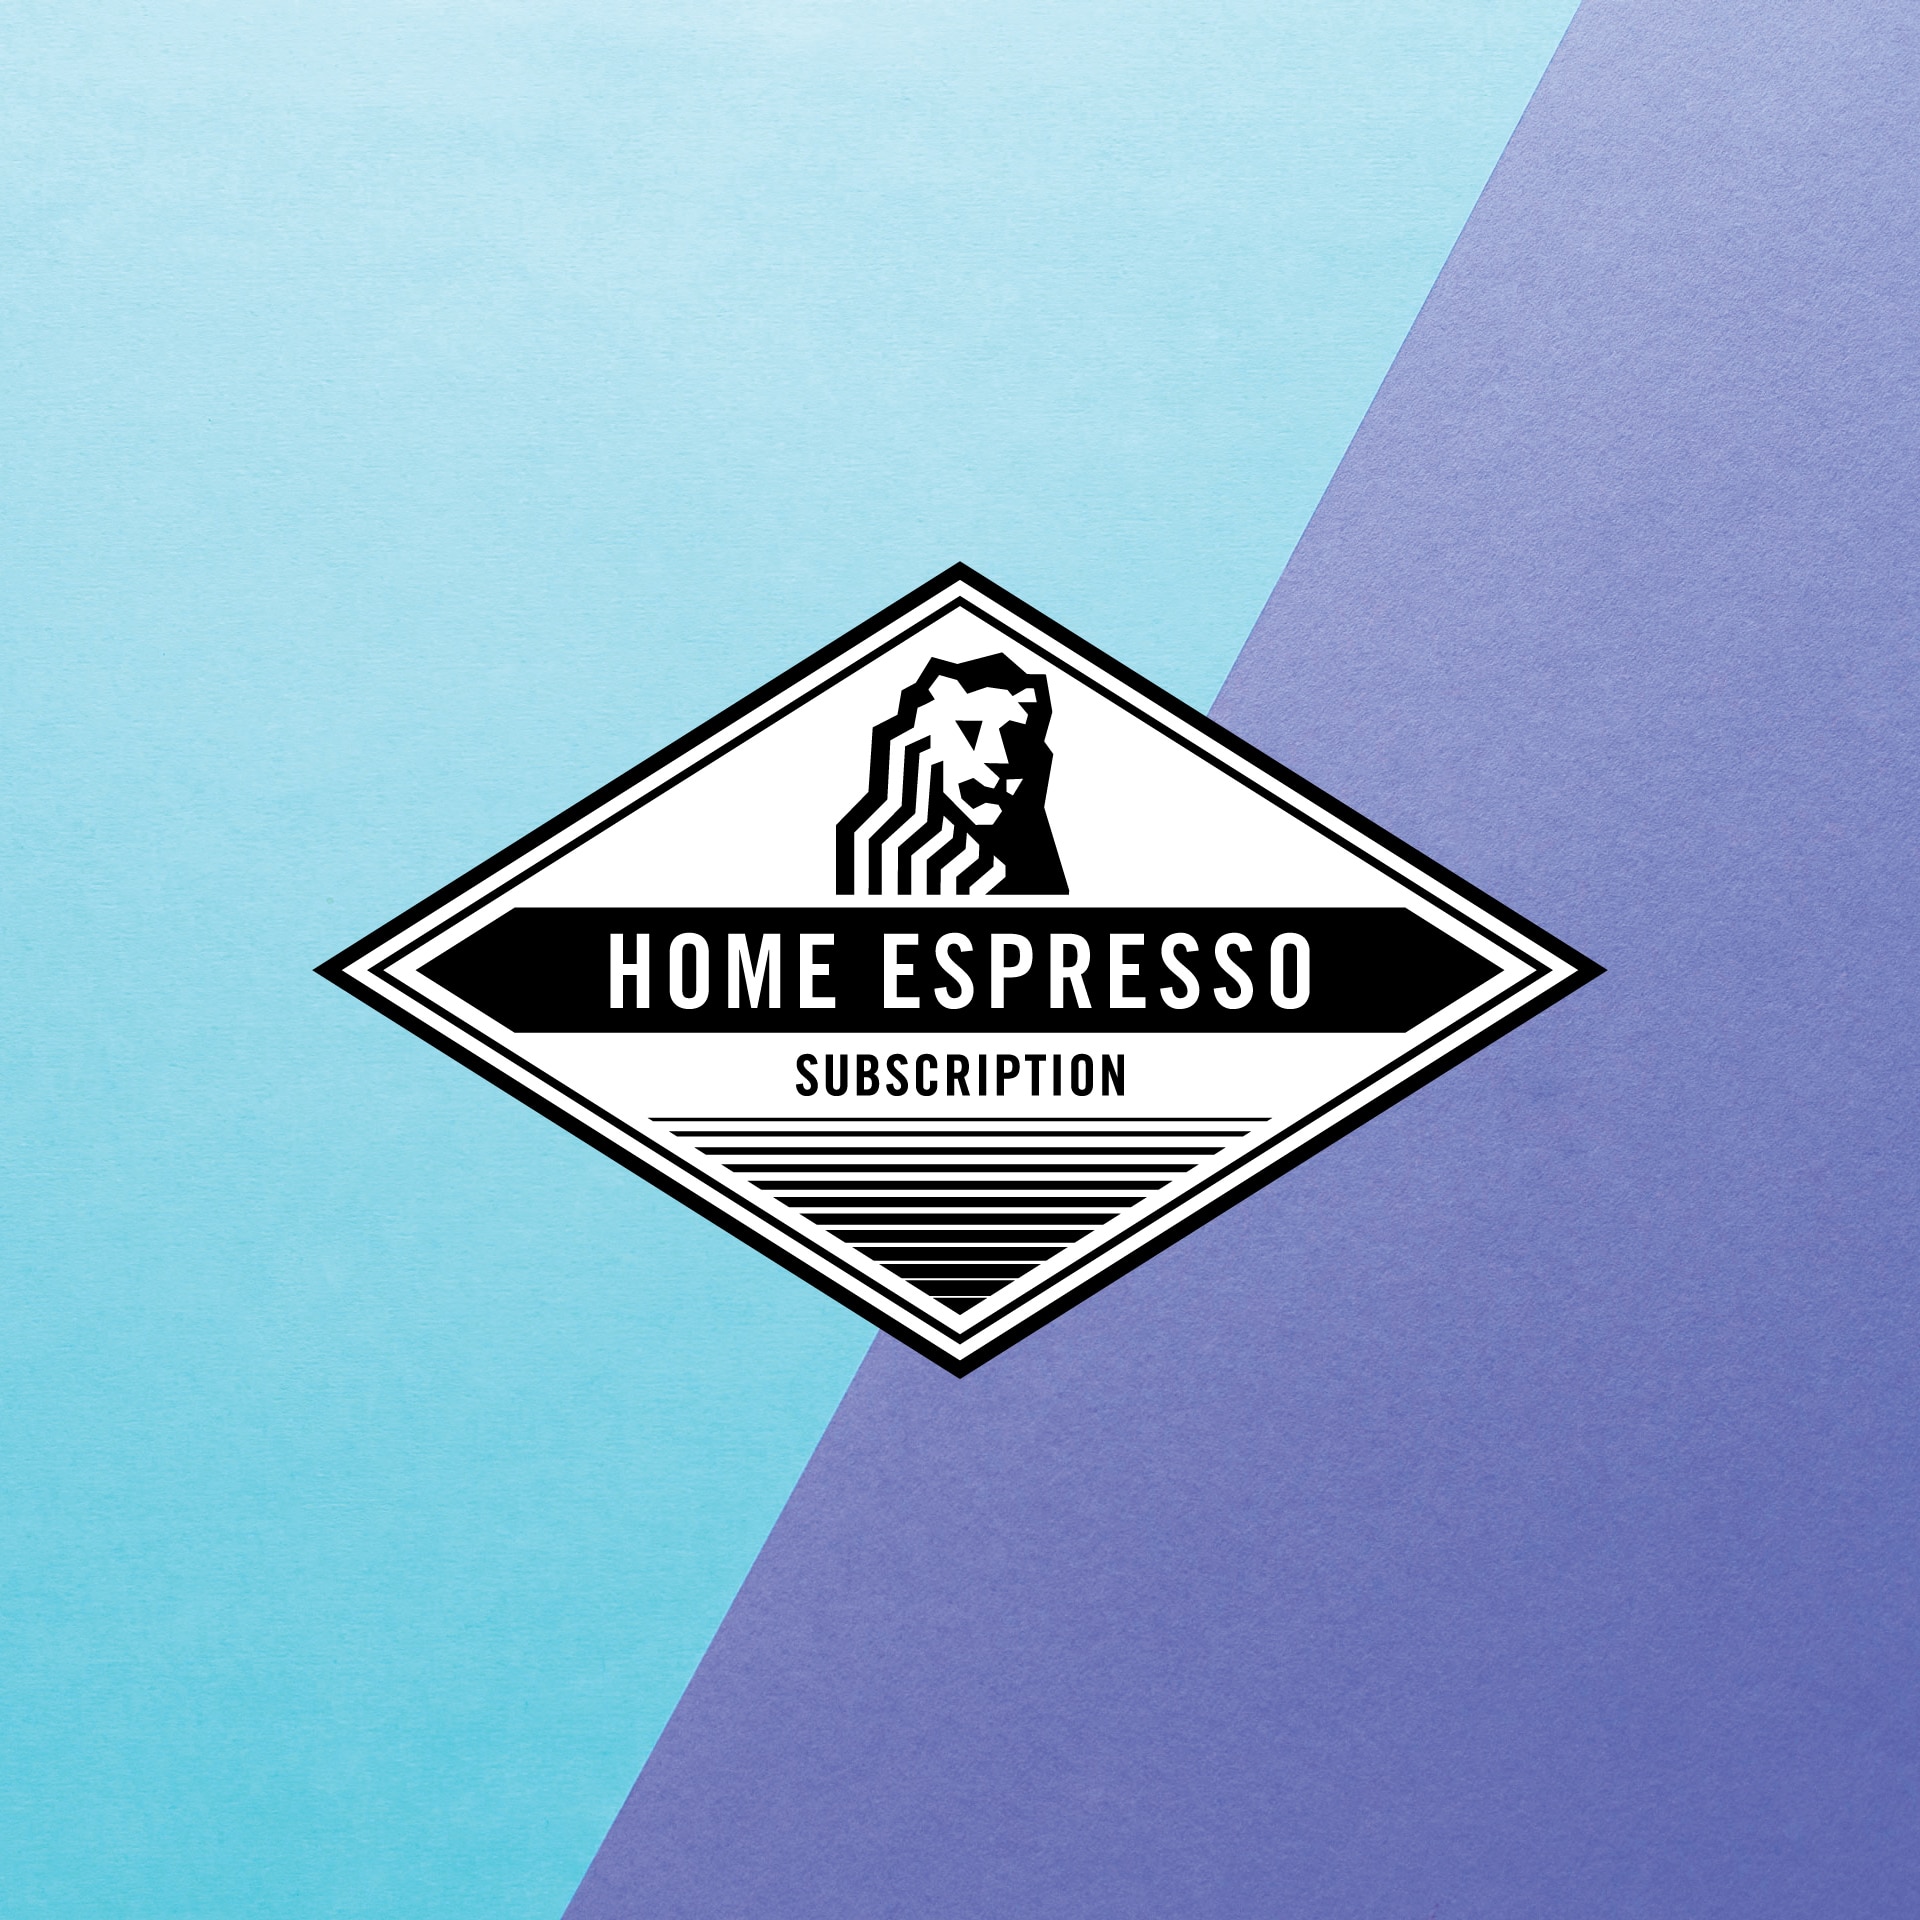 The La Marzocco Home Espresso Subscription badge designed by Needmore Designs